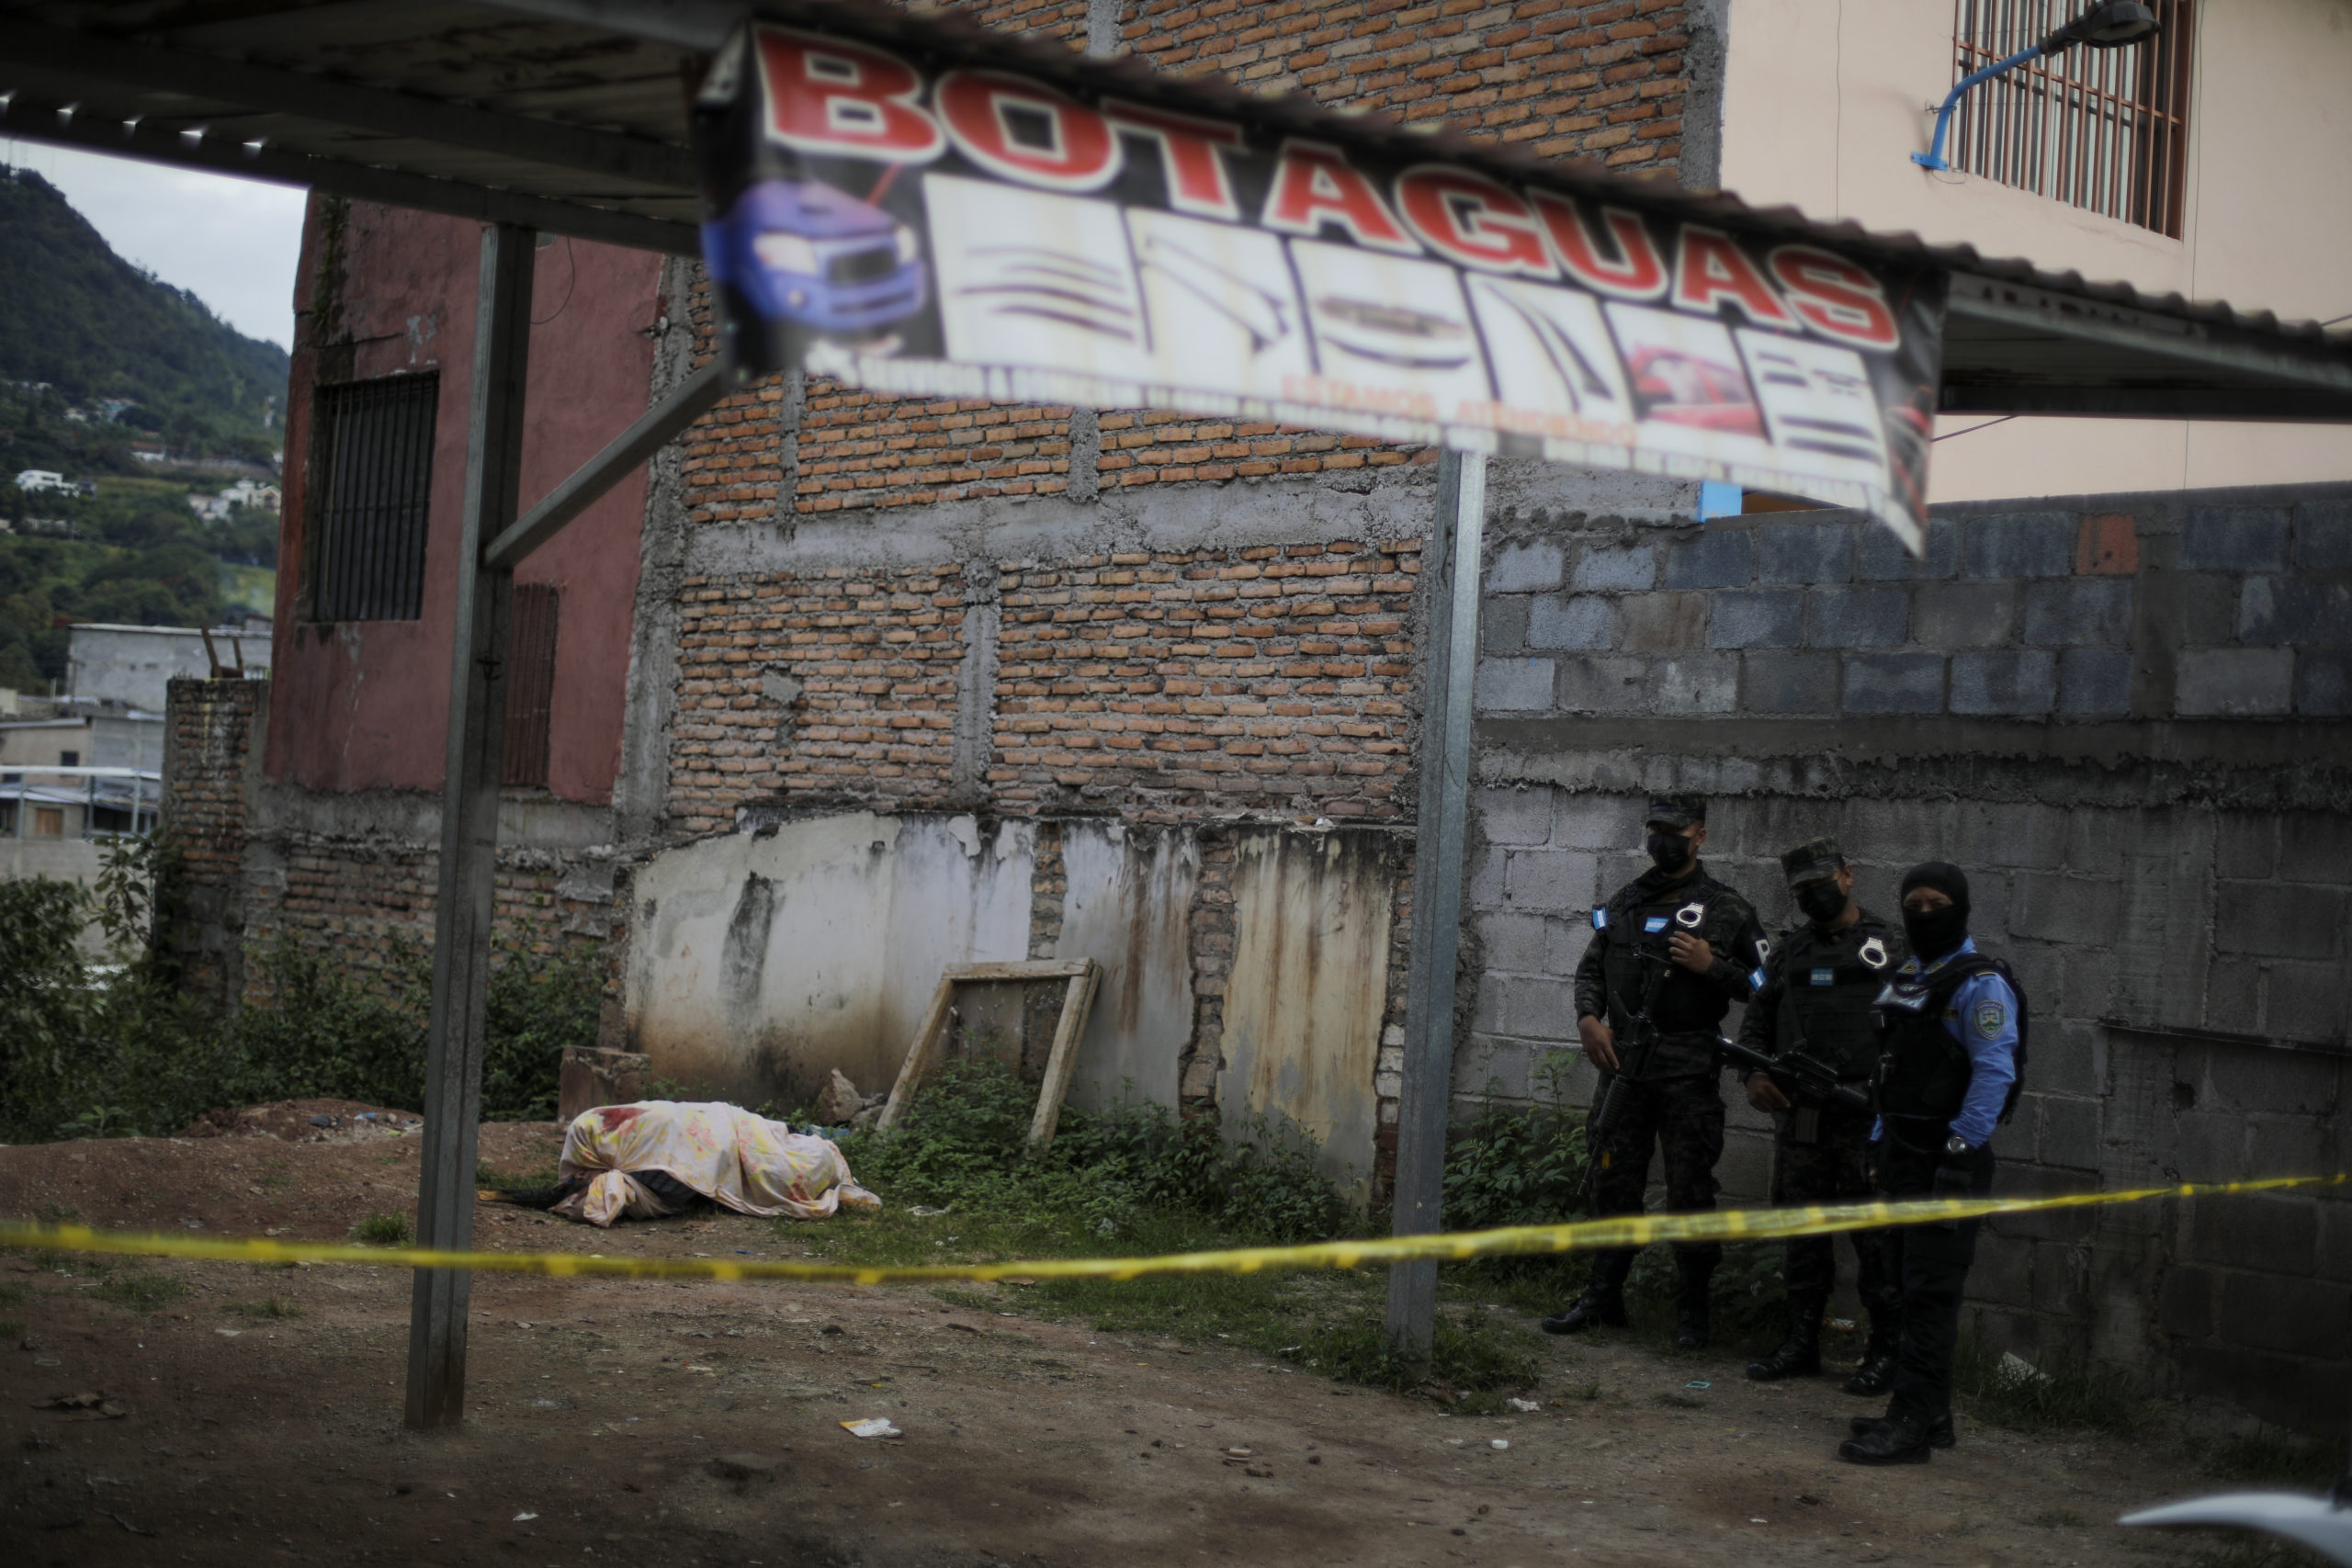 Miembros de la policía militar y policía nacional resguardan la escena del crimen donde fue encontrado el cuerpo de una persona encostalada. Foto CC/Jorge Cabrera